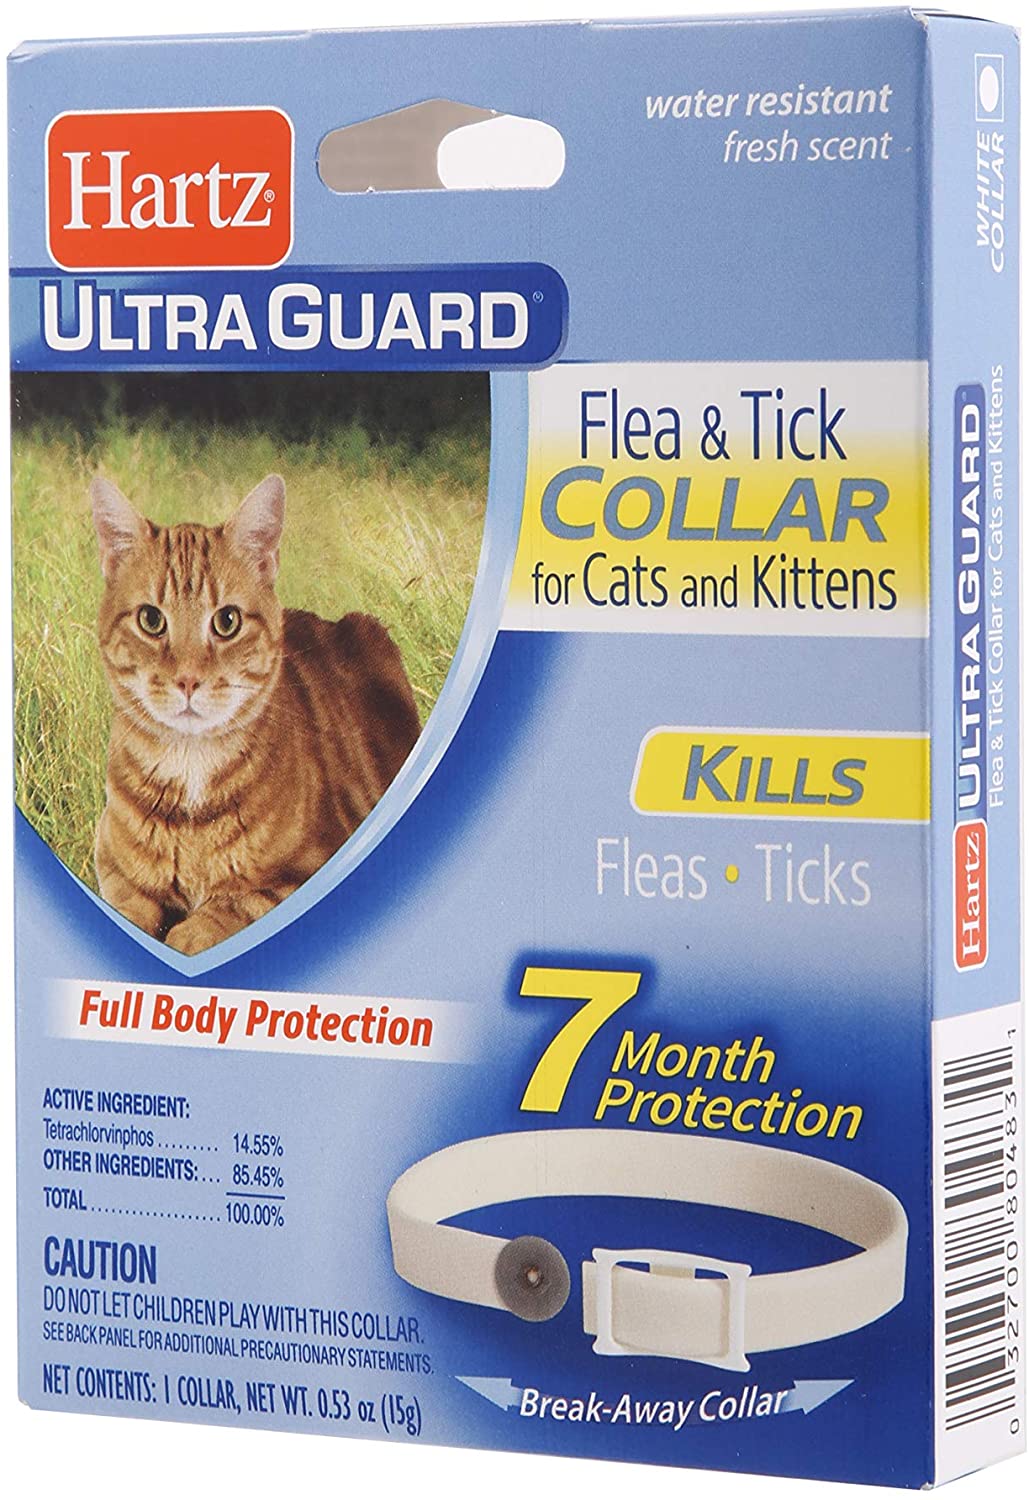 Hartz UltraGuard Flea & Tick Collar for Cats and Kittens